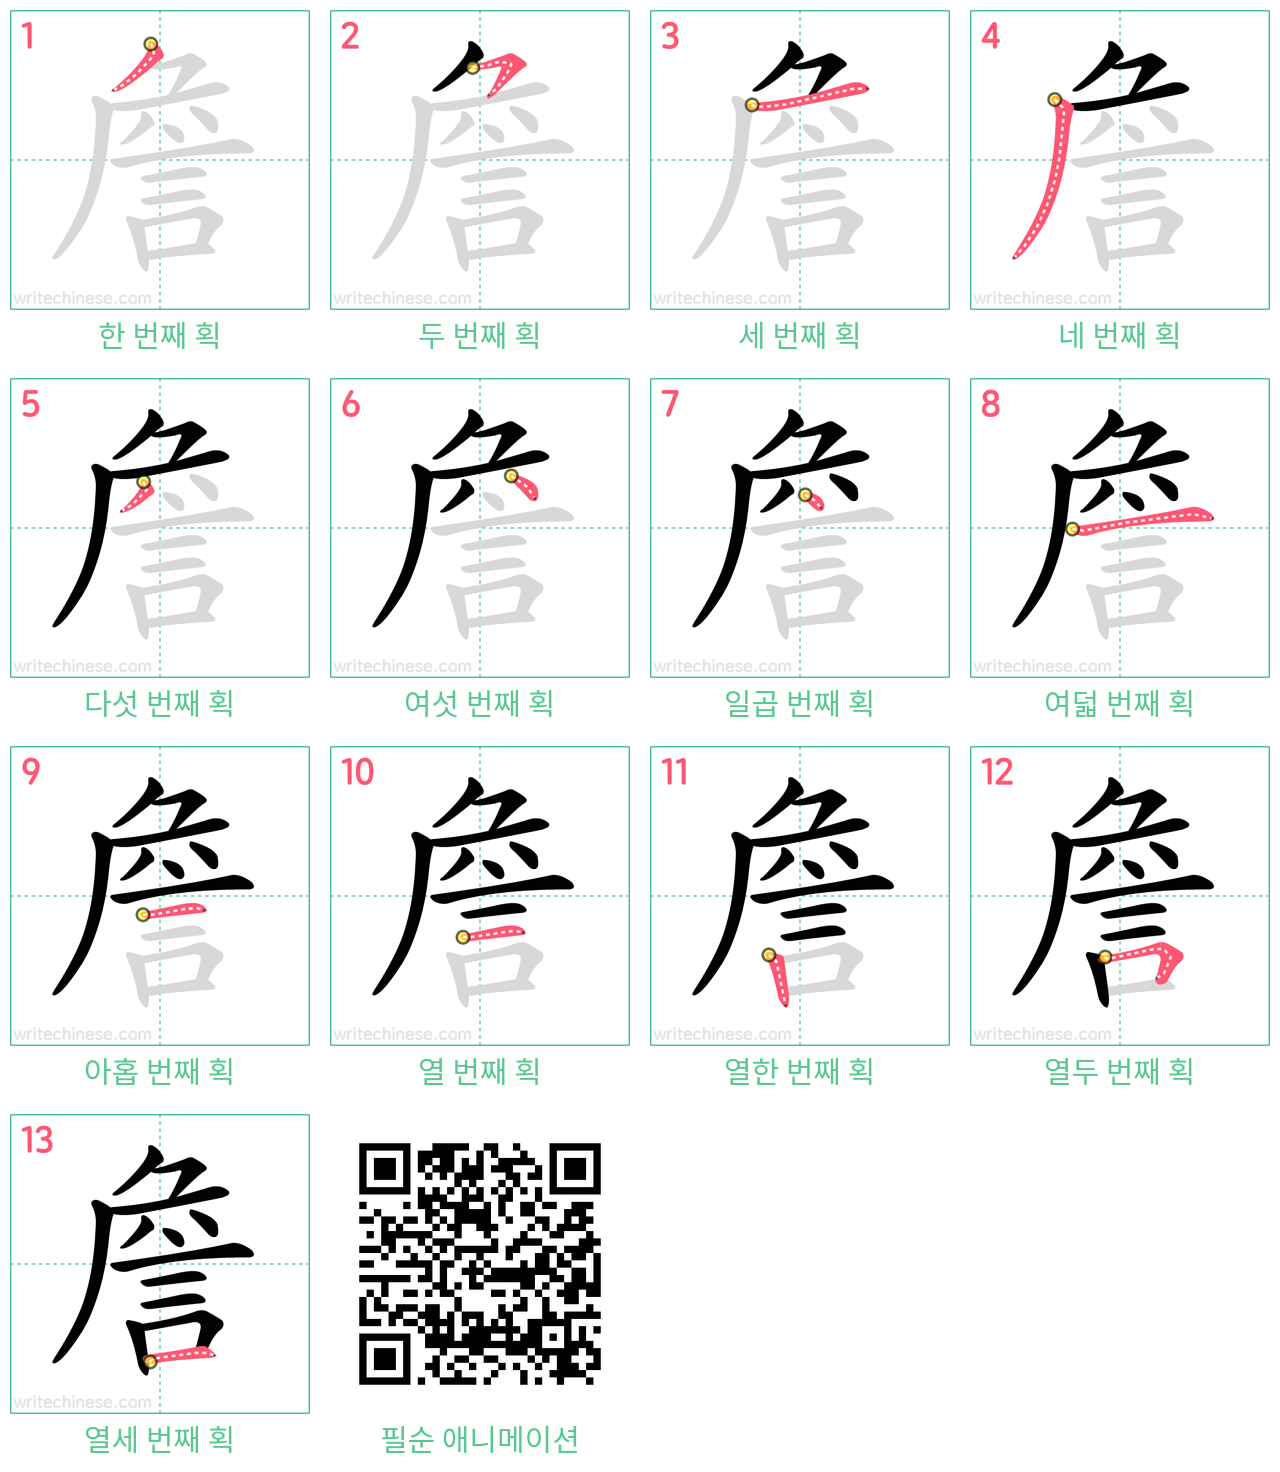 詹 step-by-step stroke order diagrams